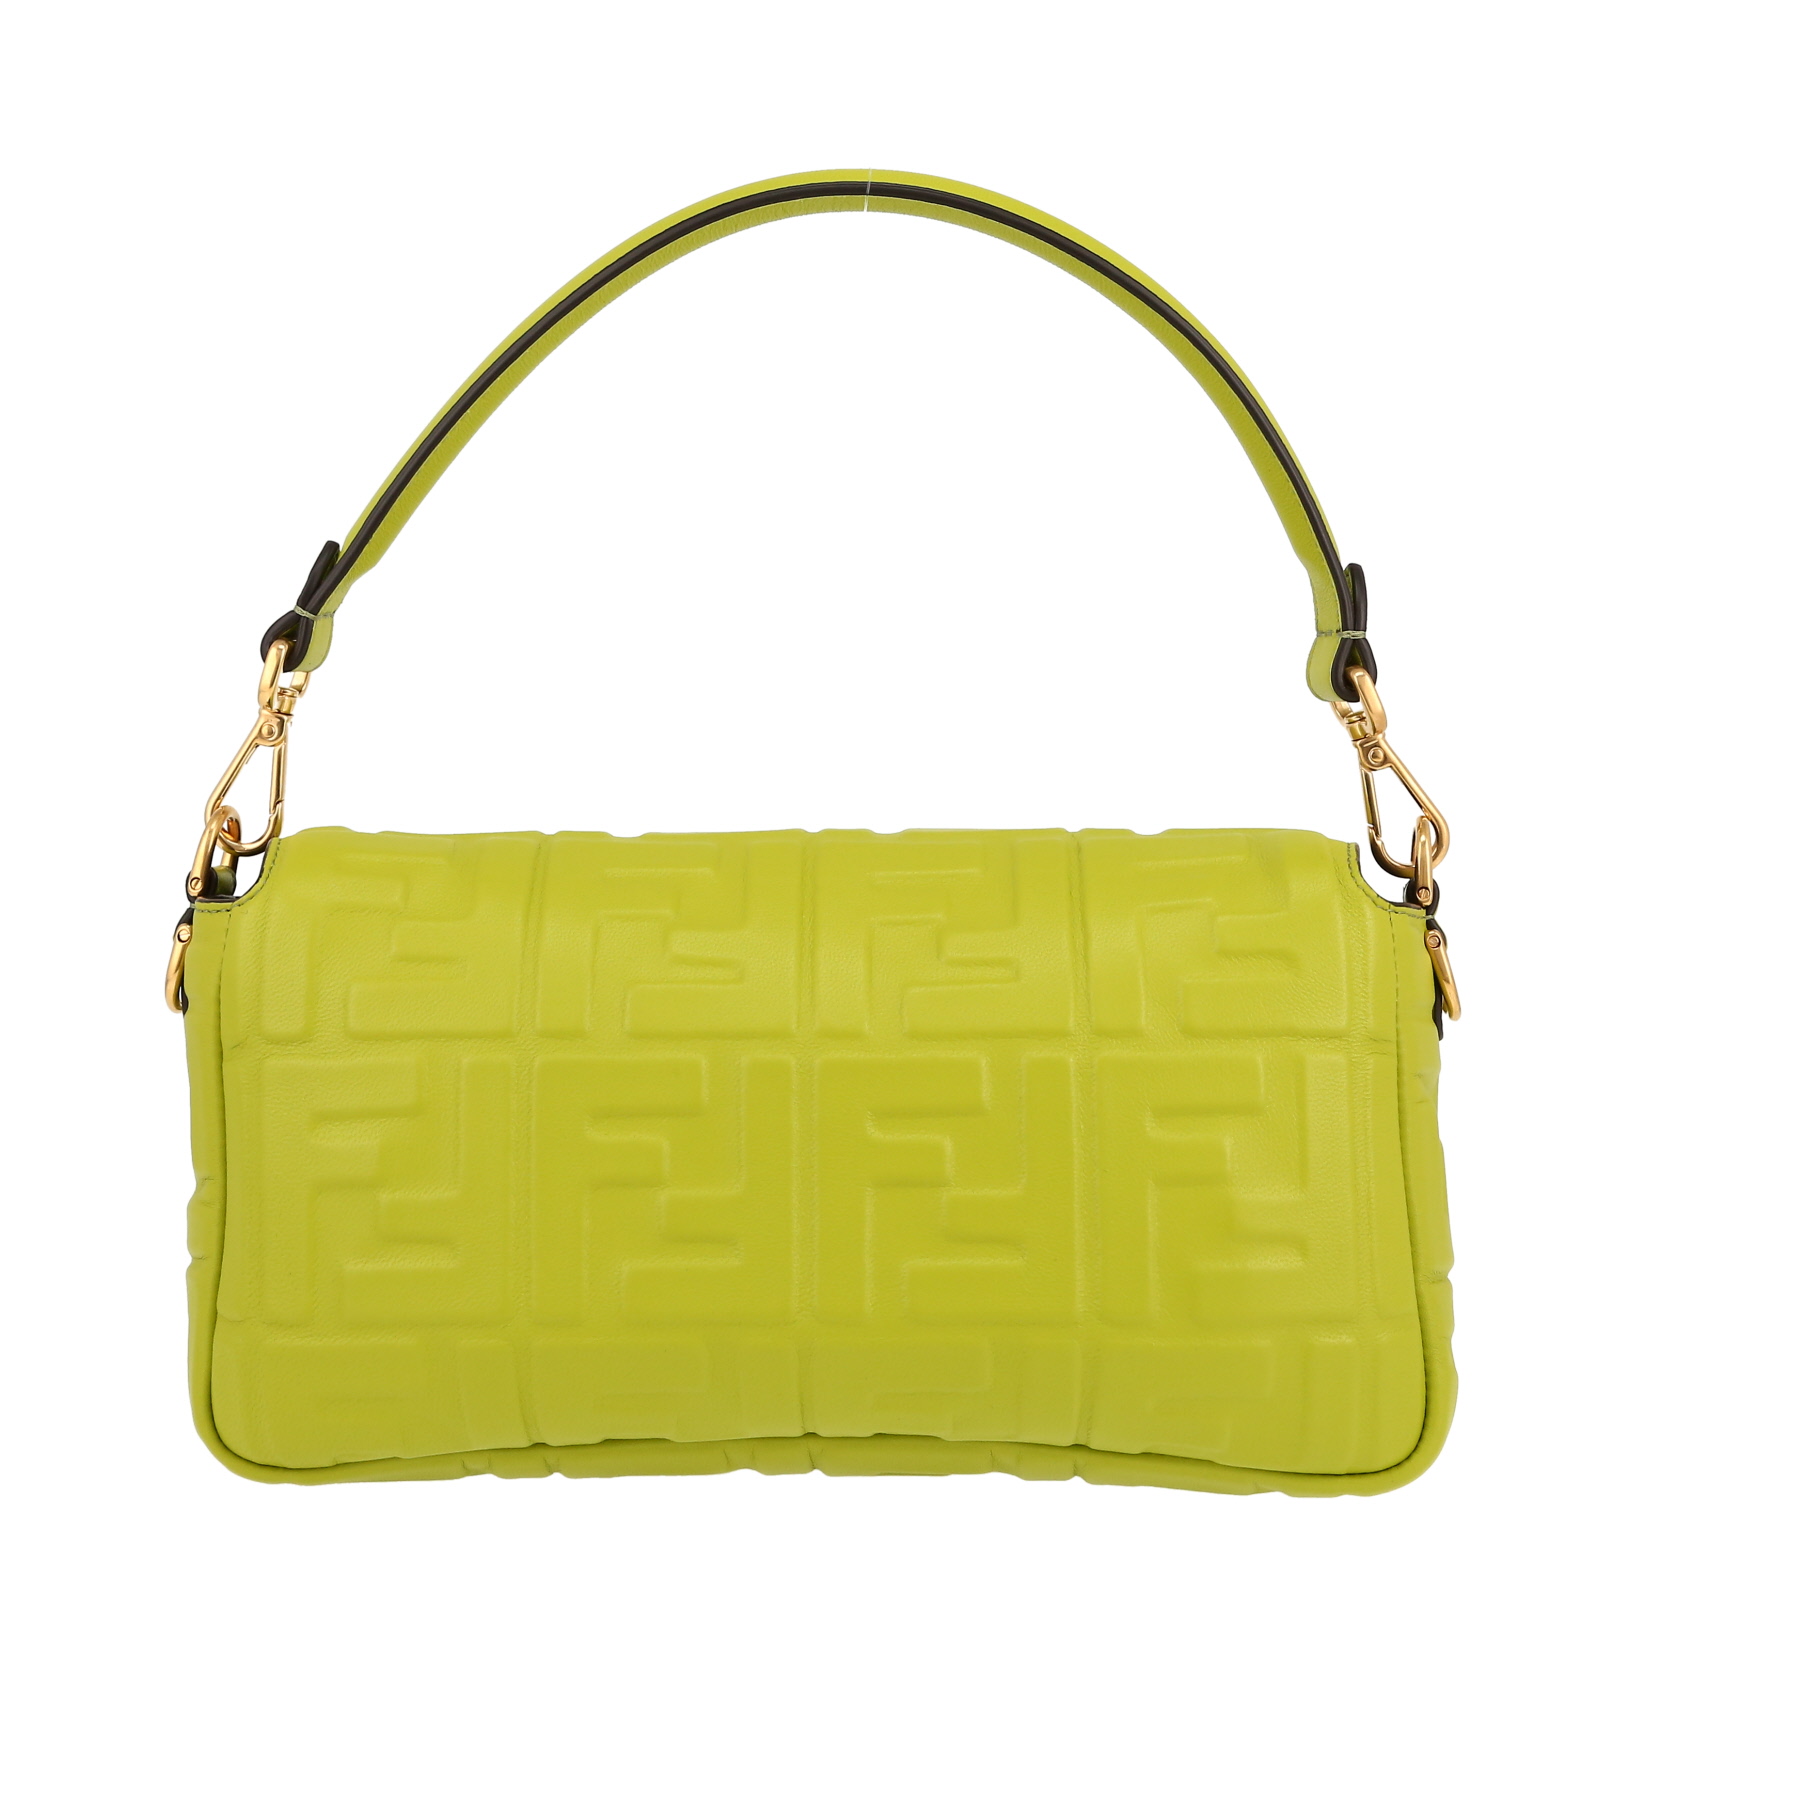 Baguette Handbag In Anise Monogram Leather